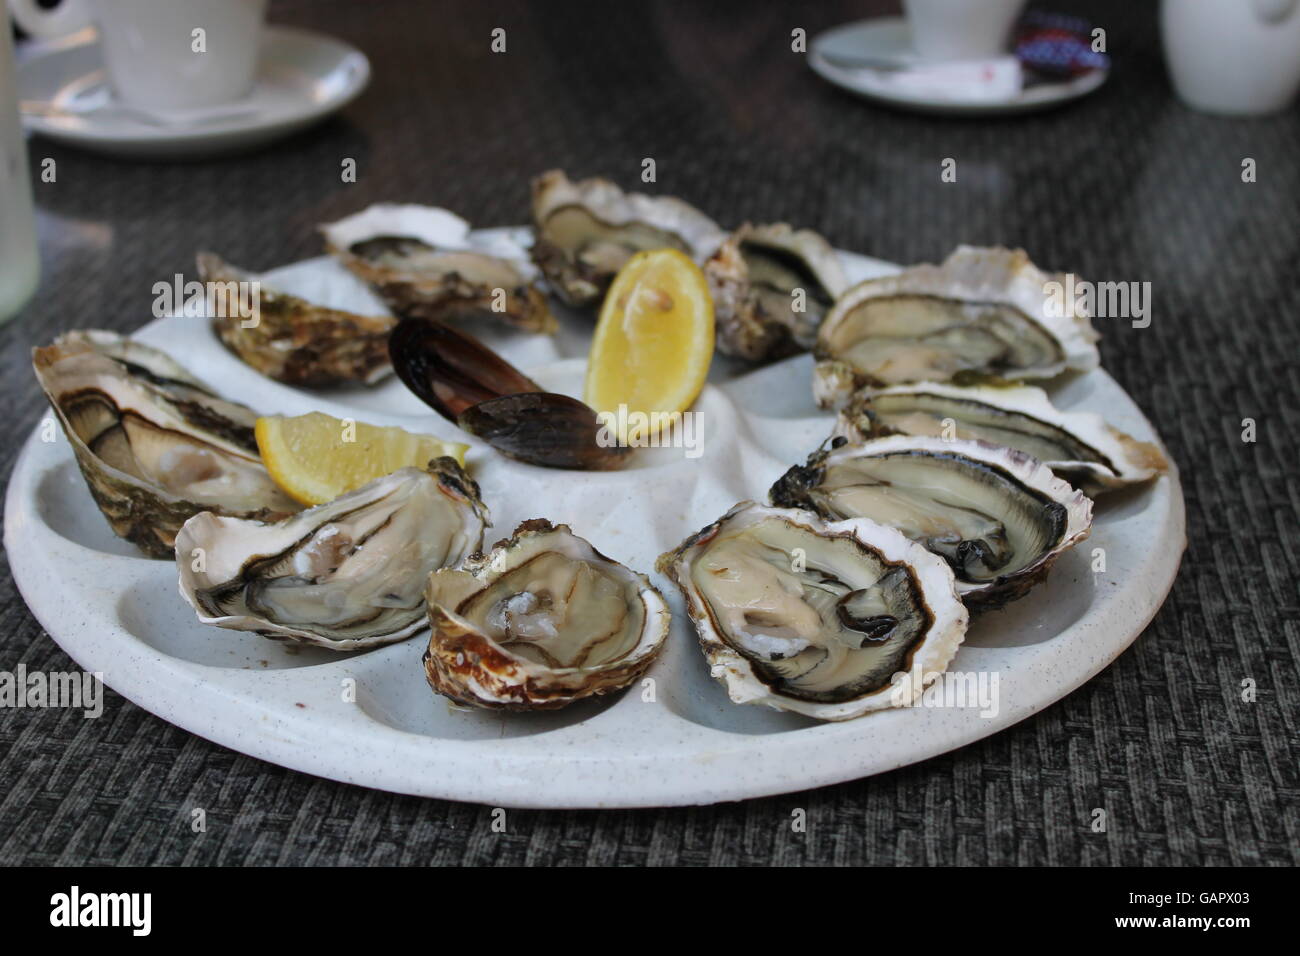 Une assiette d'huîtres, fruits de mer, sud de la France, Vias, une saine alimentation, l'alimentation, du poisson frais Banque D'Images